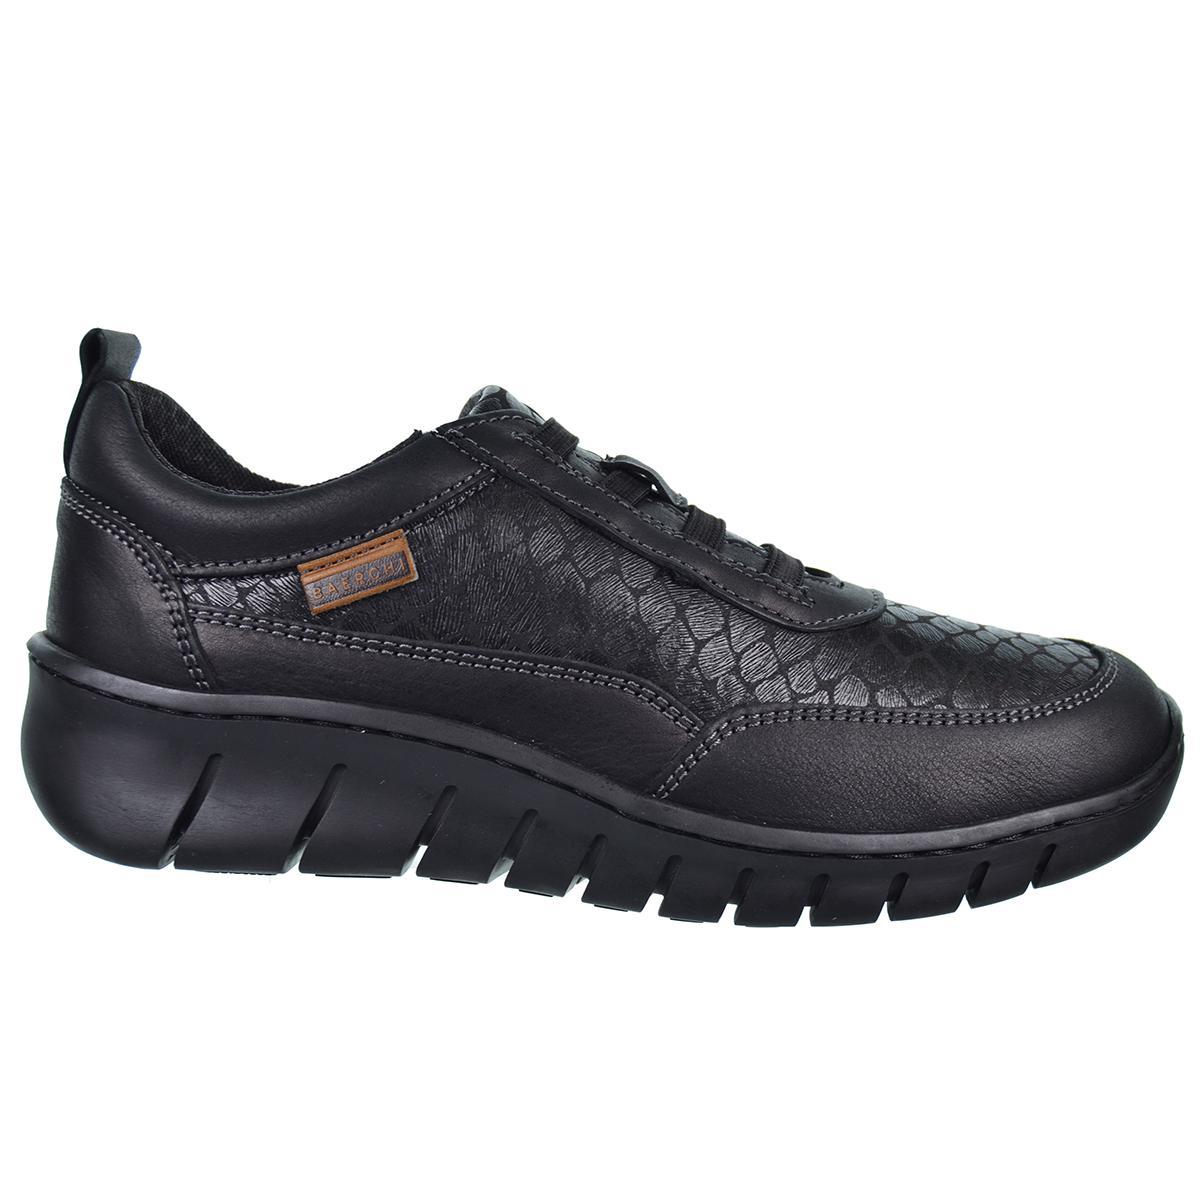 60607 Baerchi Zapato Confort Piel estilo casual. acolchado, transpirable. Cordones. Antideslizante. Flexible Fabricado en España